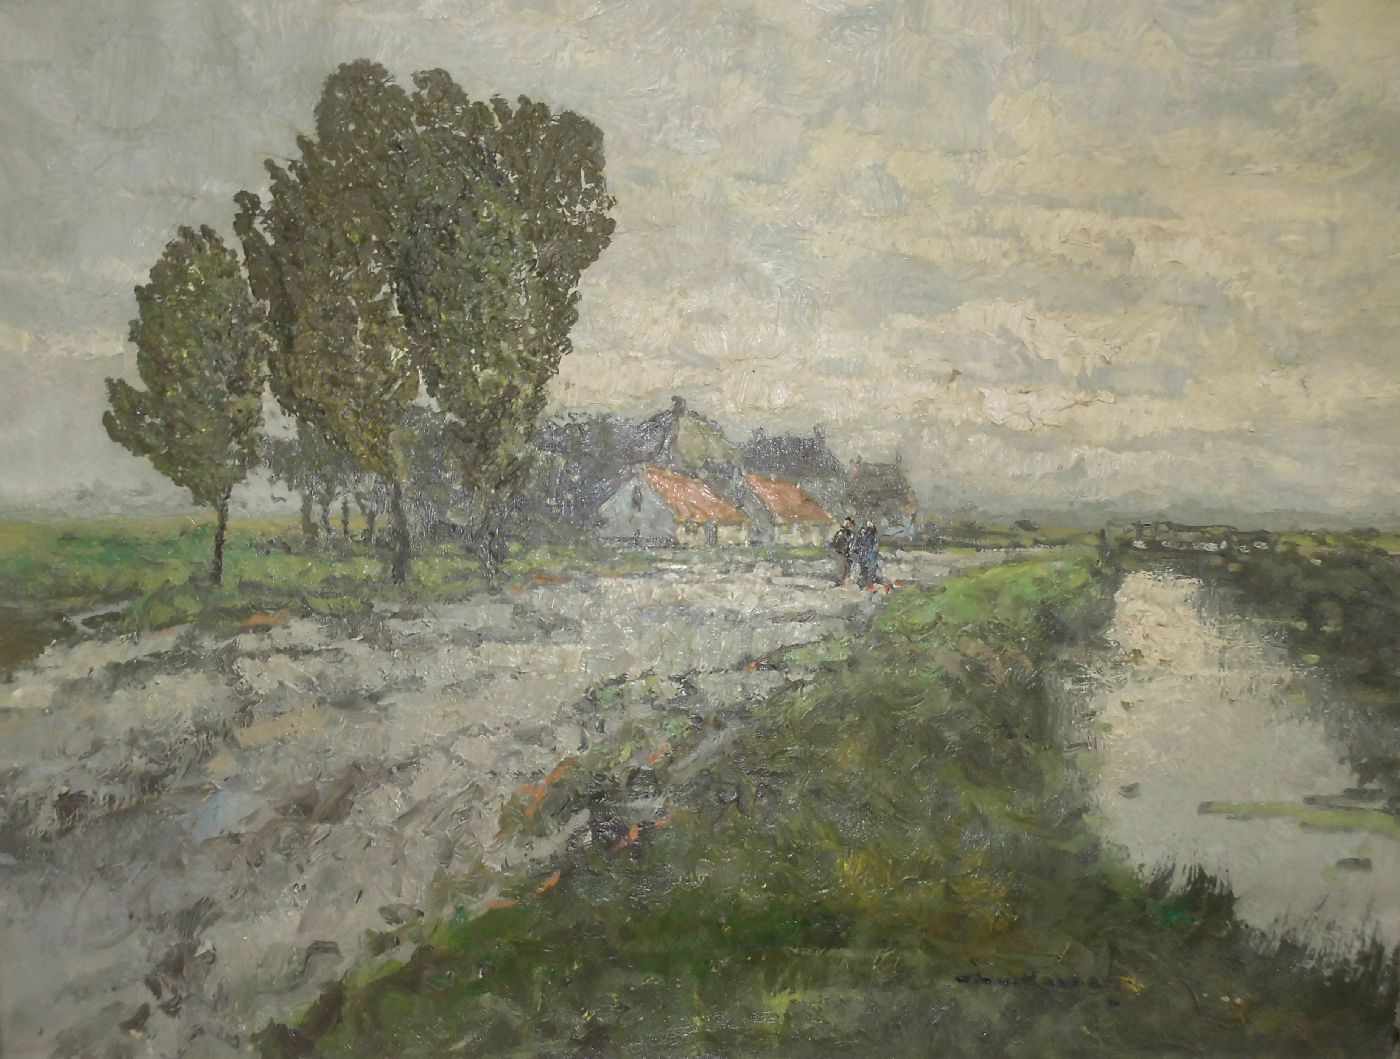 VAN NORDEN, WILHELM HENDRIK (auch WILLEM, 1883-1913), Gemälde / painting: "Niederländisches Dorf